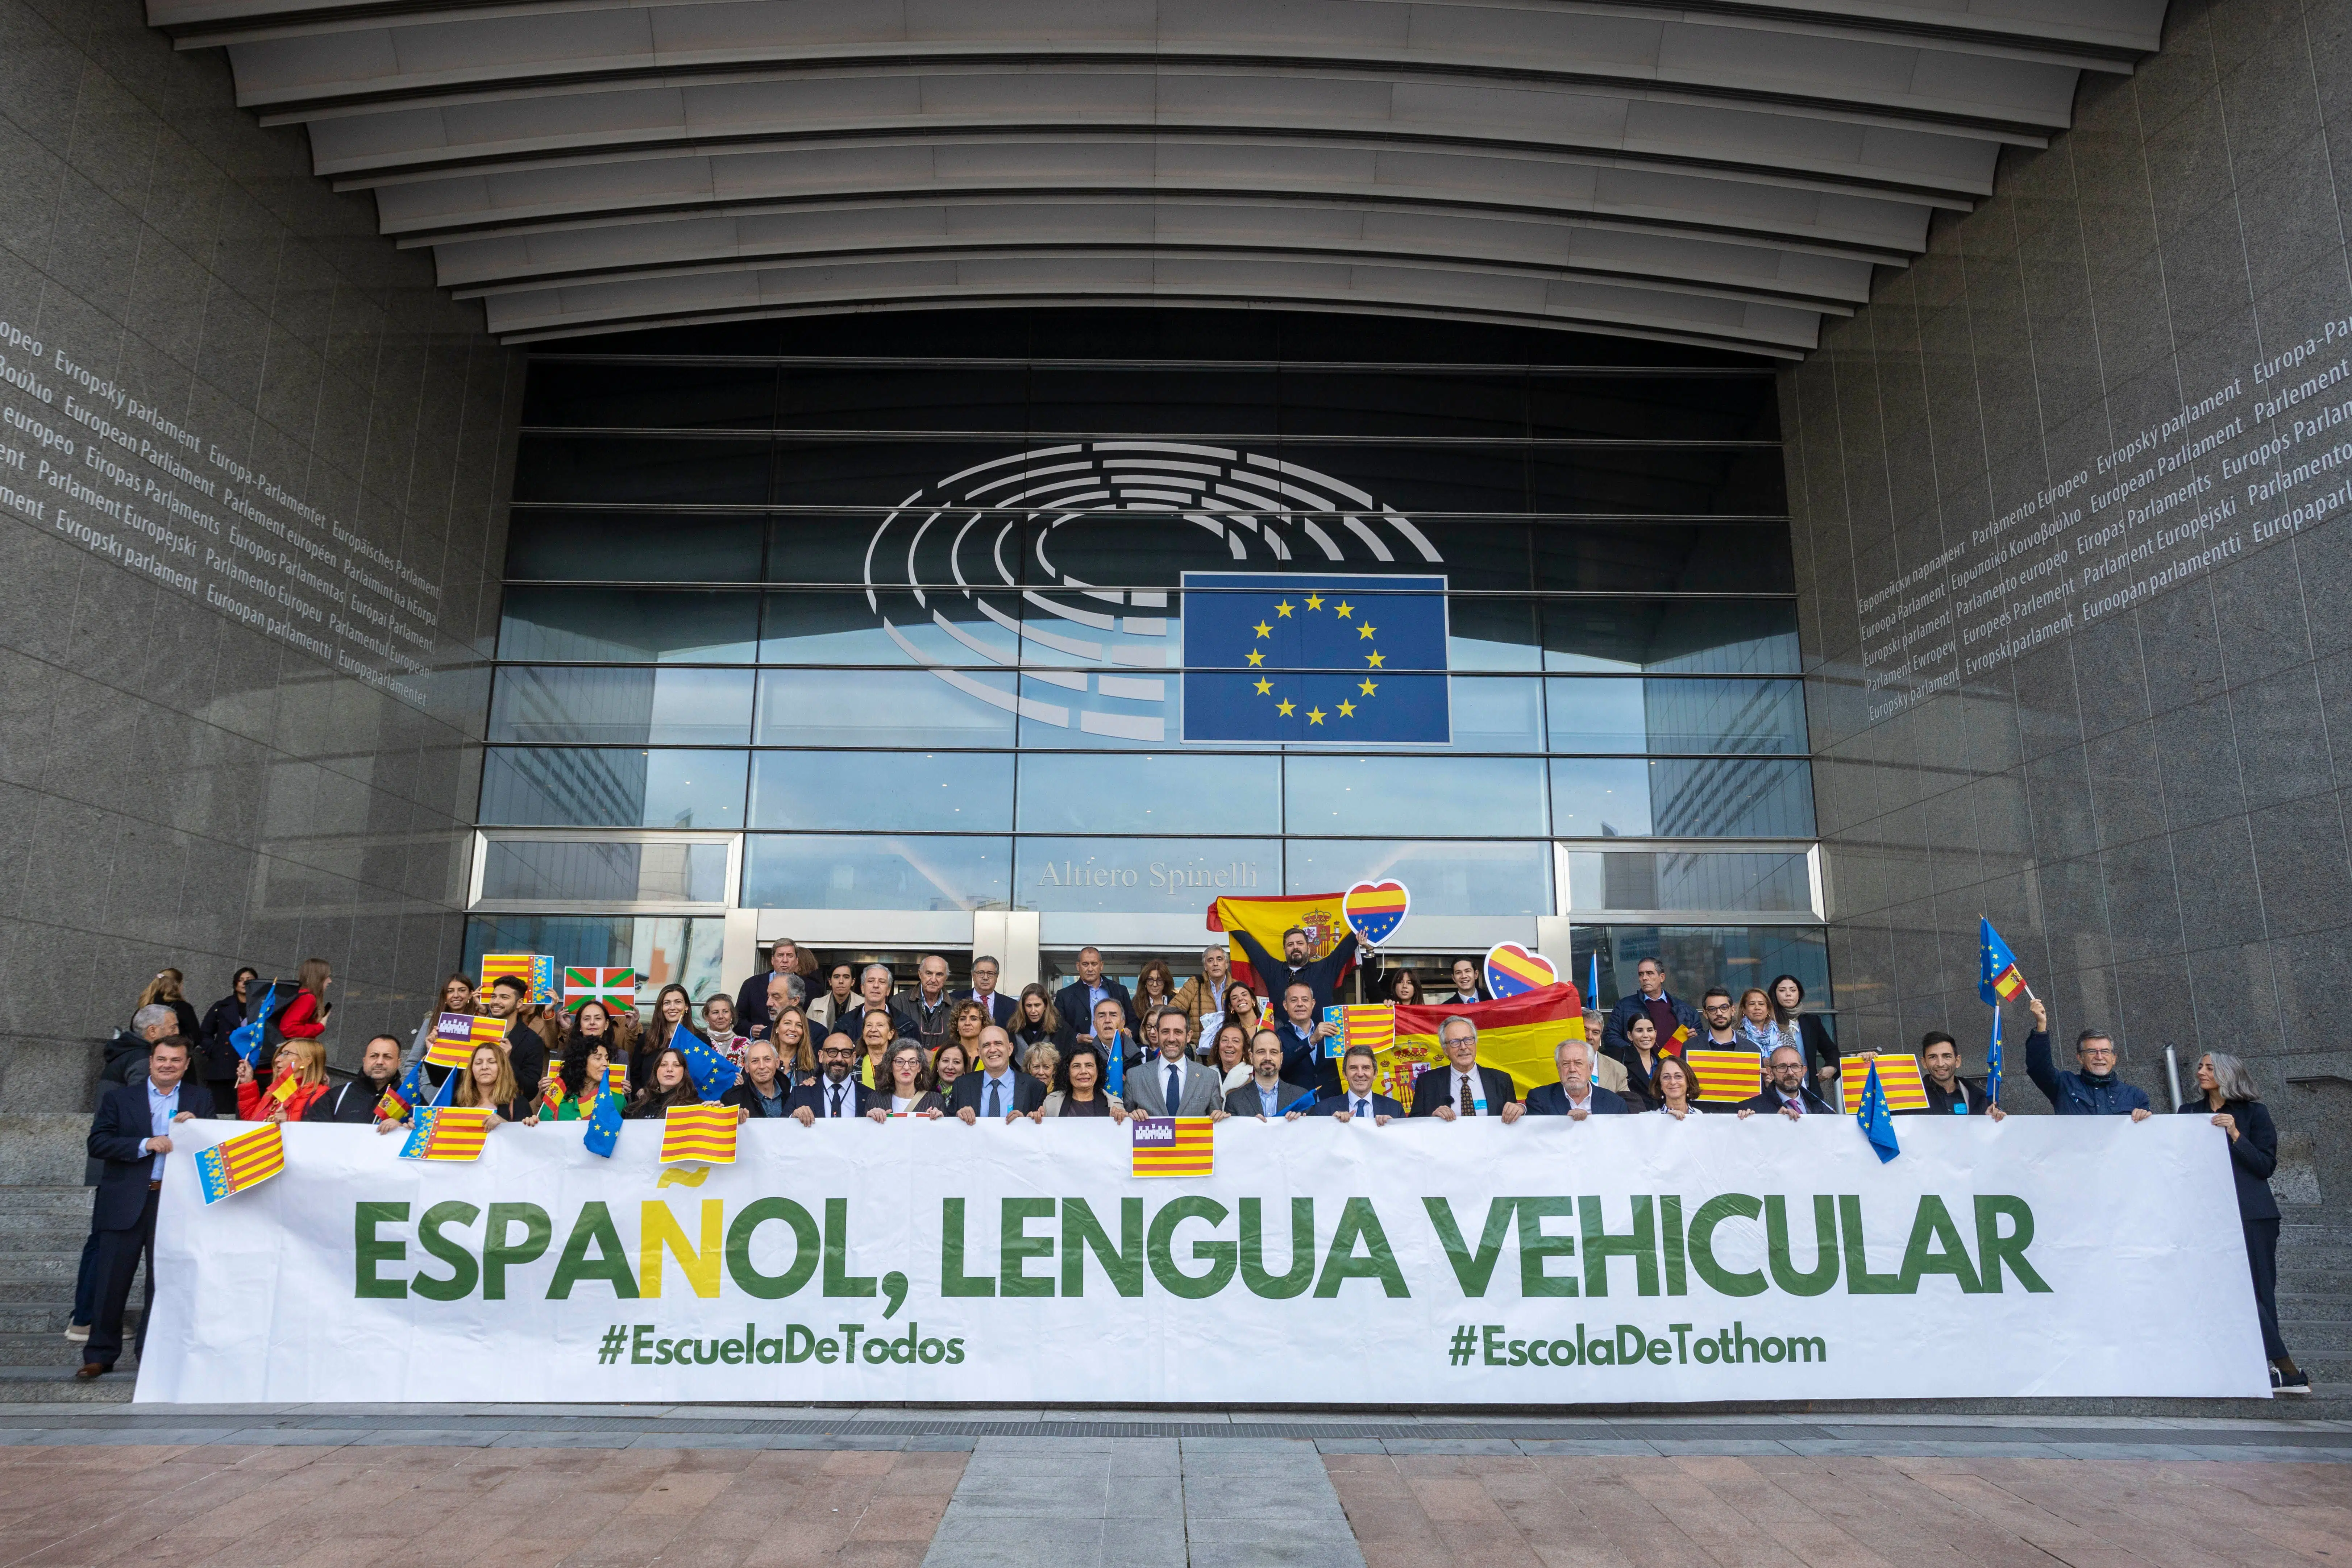 Pagazaurtundúa y asociaciones de defensa del español denuncian ante Europa la discriminación por razones de lengua en España